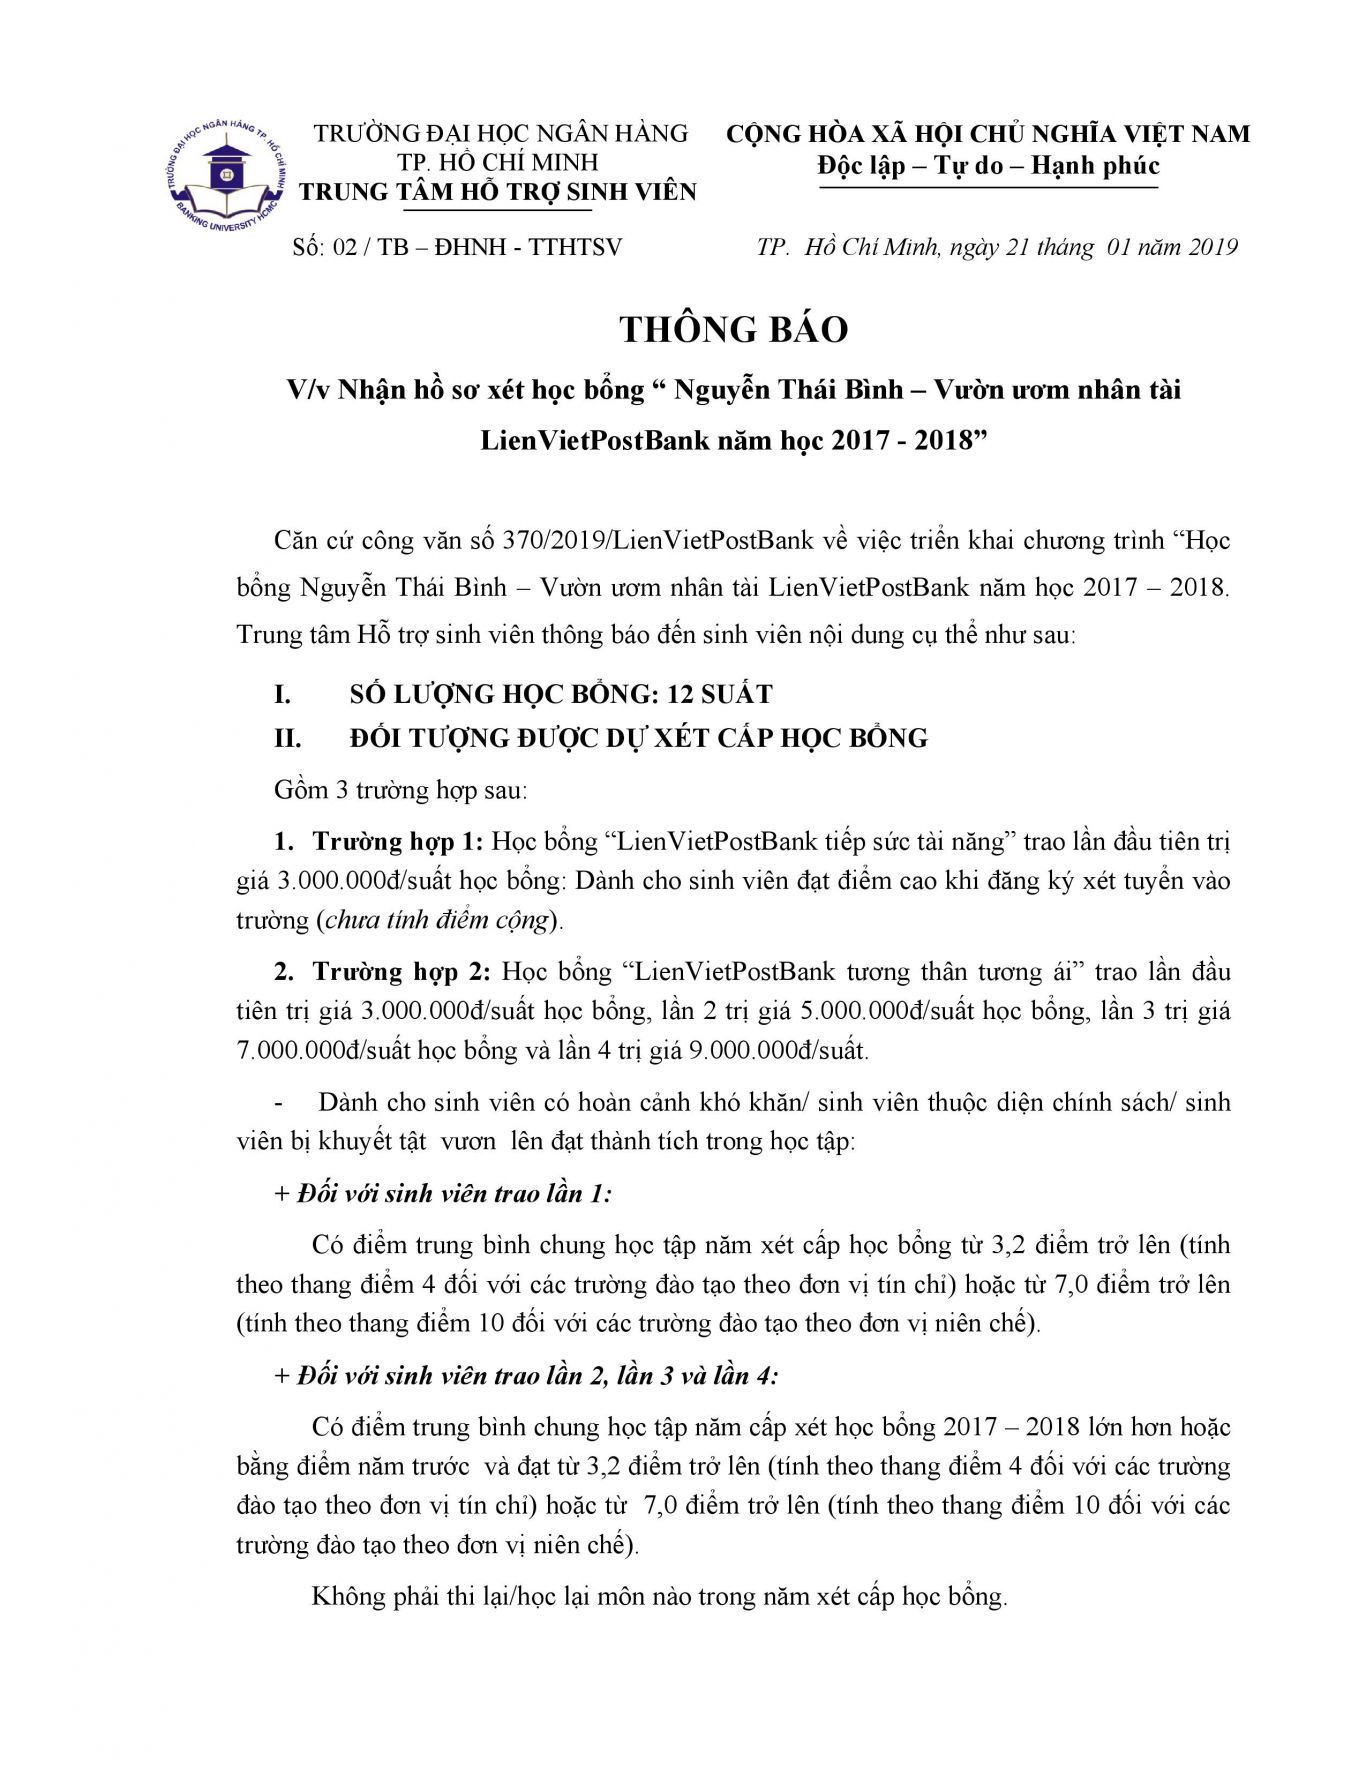 Thông báo V/v nhận hồ sơ xét học bổng “Nguyễn Thái Bình – Vườn ươm nhân tài LienVietPostBank năm học 2017 - 2018”